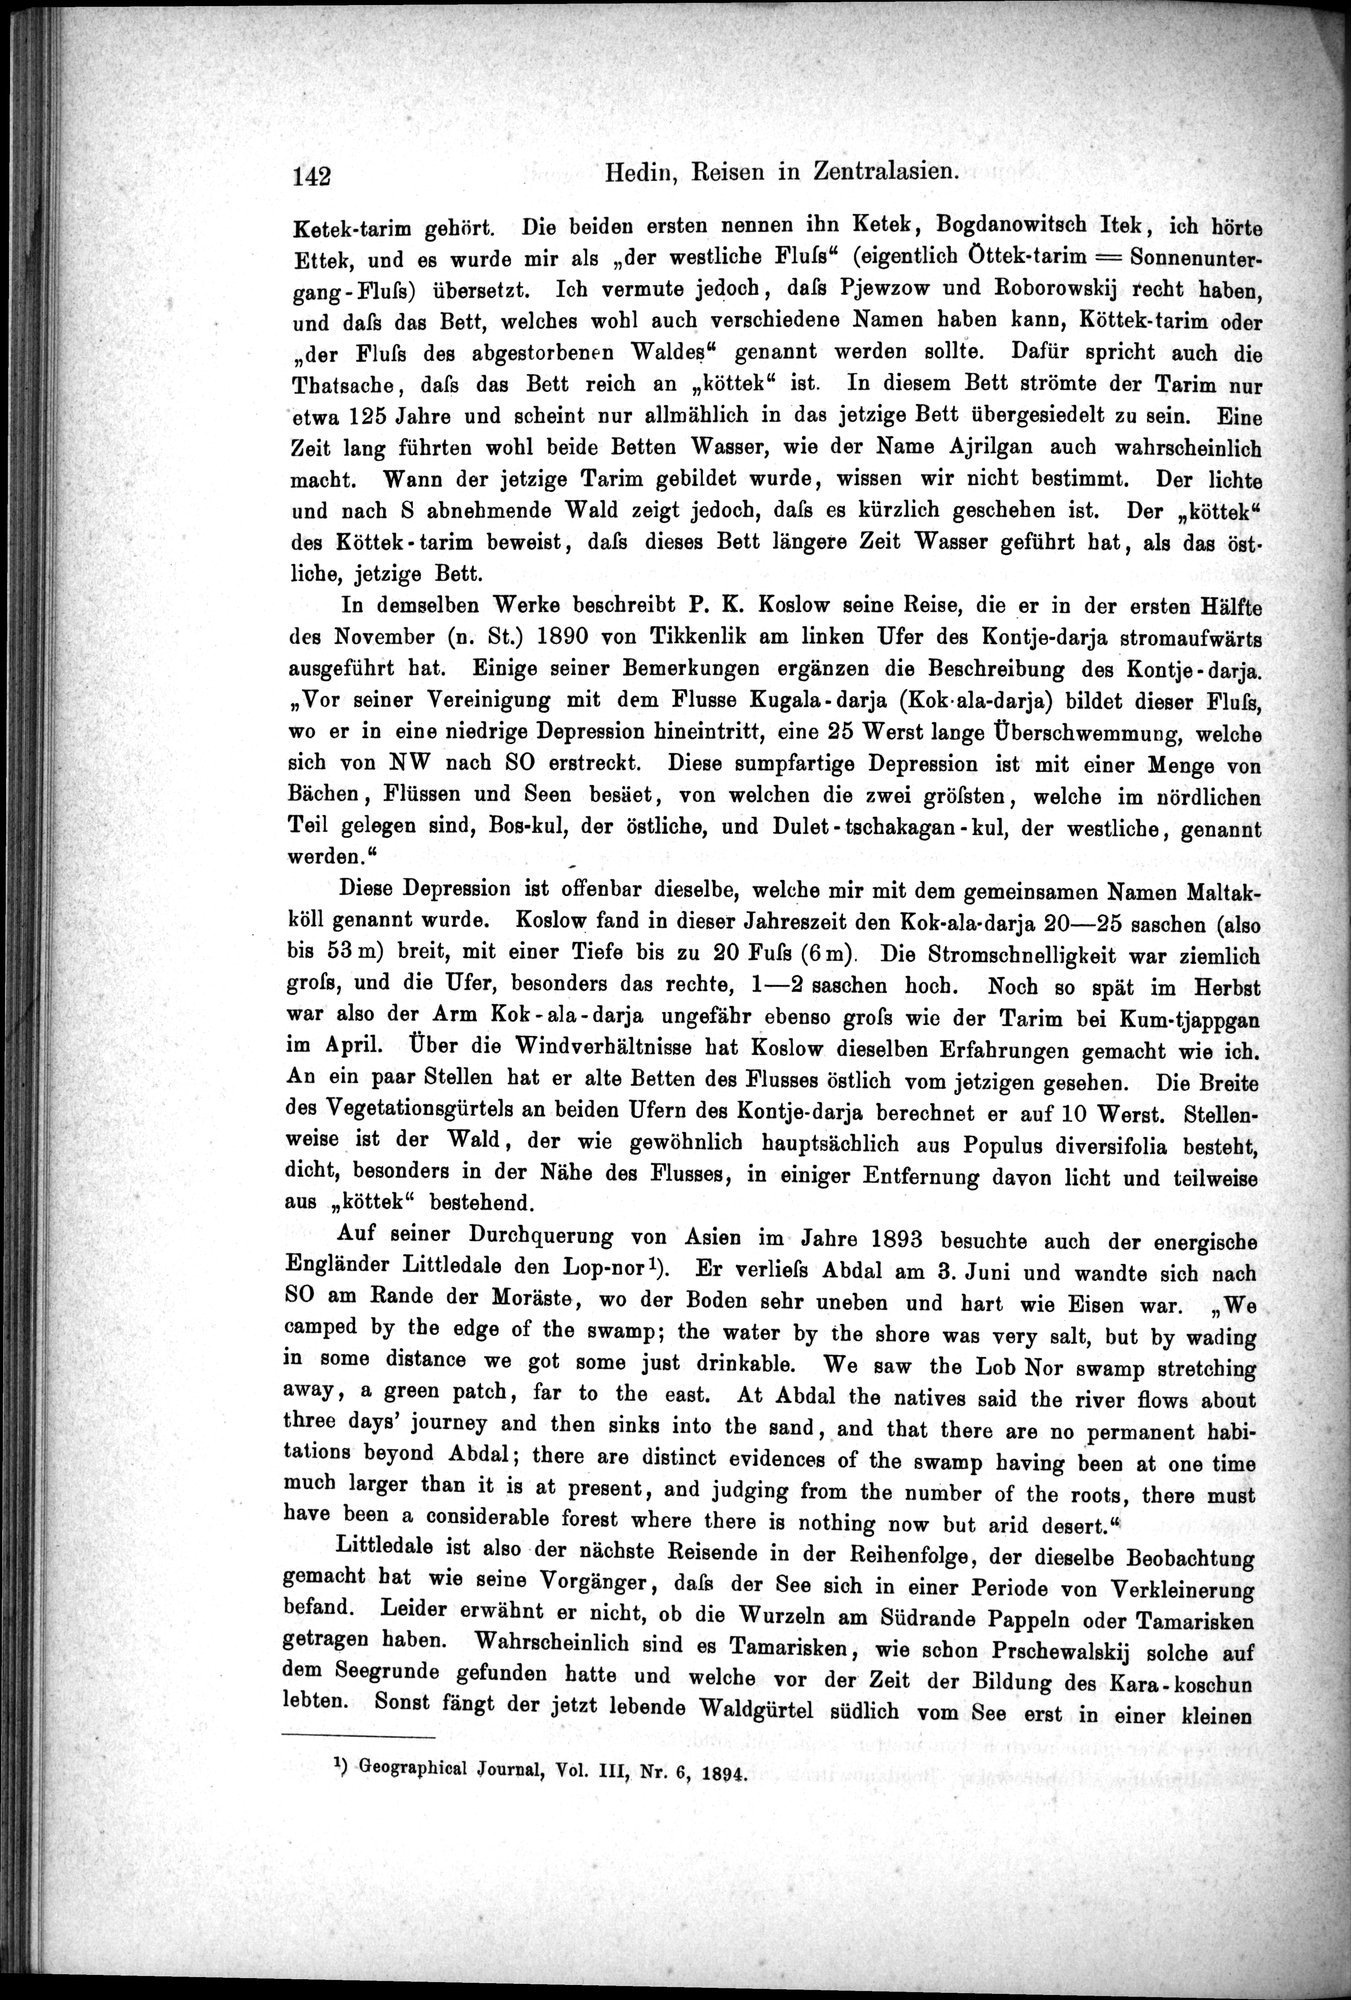 Die Geographische-Wissenschaftlichen Ergebnisse meiner Reisen in Zentralasien, 1894-1897 : vol.1 / Page 154 (Grayscale High Resolution Image)